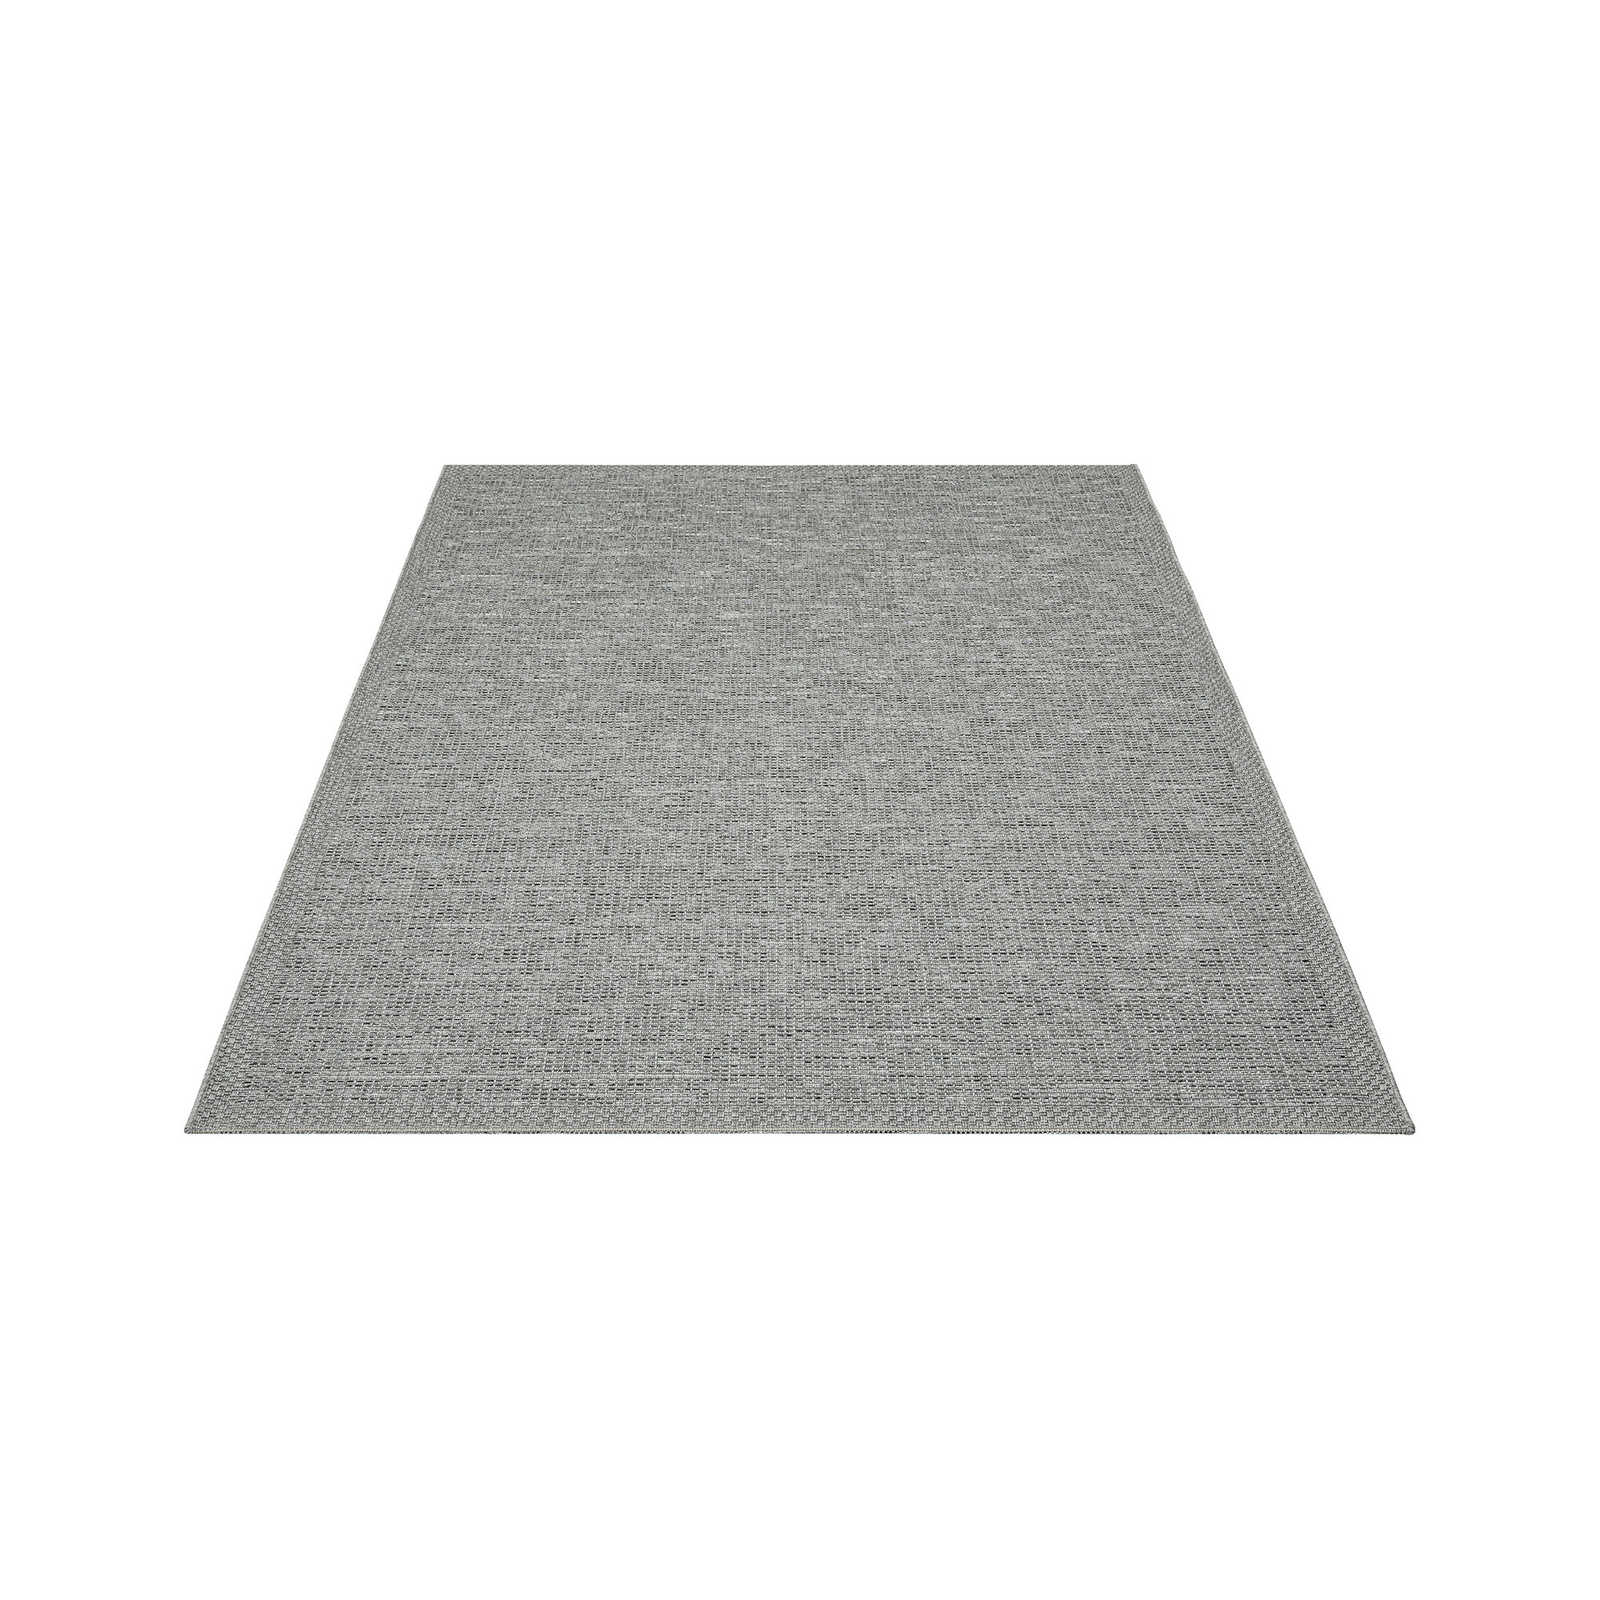 Plain Outdoor Rug in Grey - 220 x 160 cm
